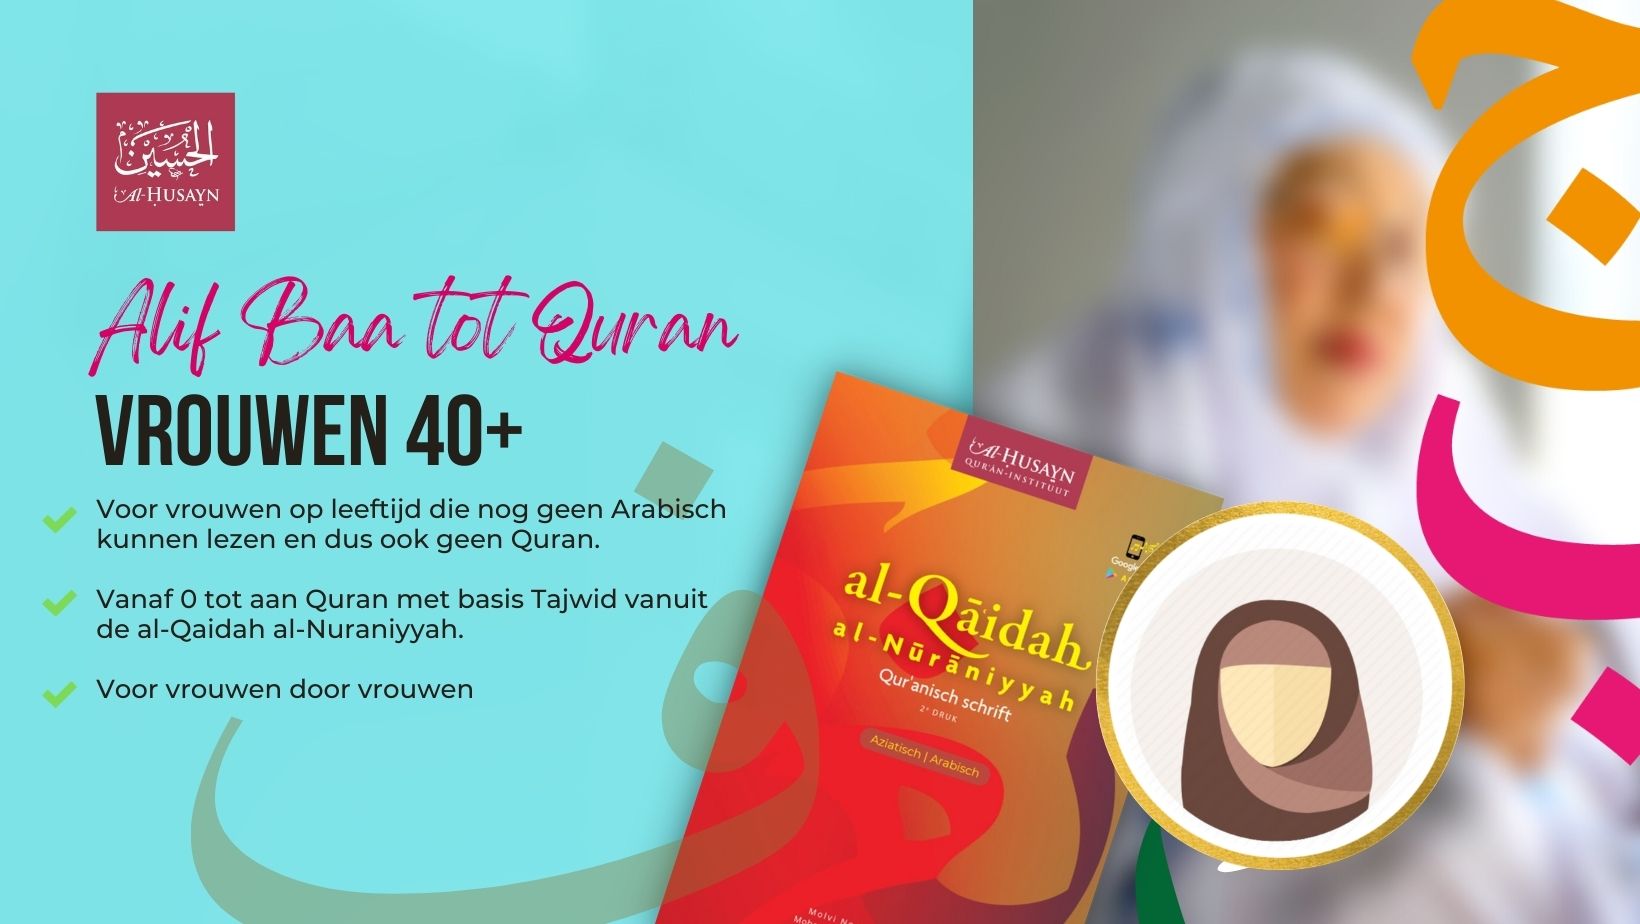 De Quran leren lezen voor vrouwen 40 cover